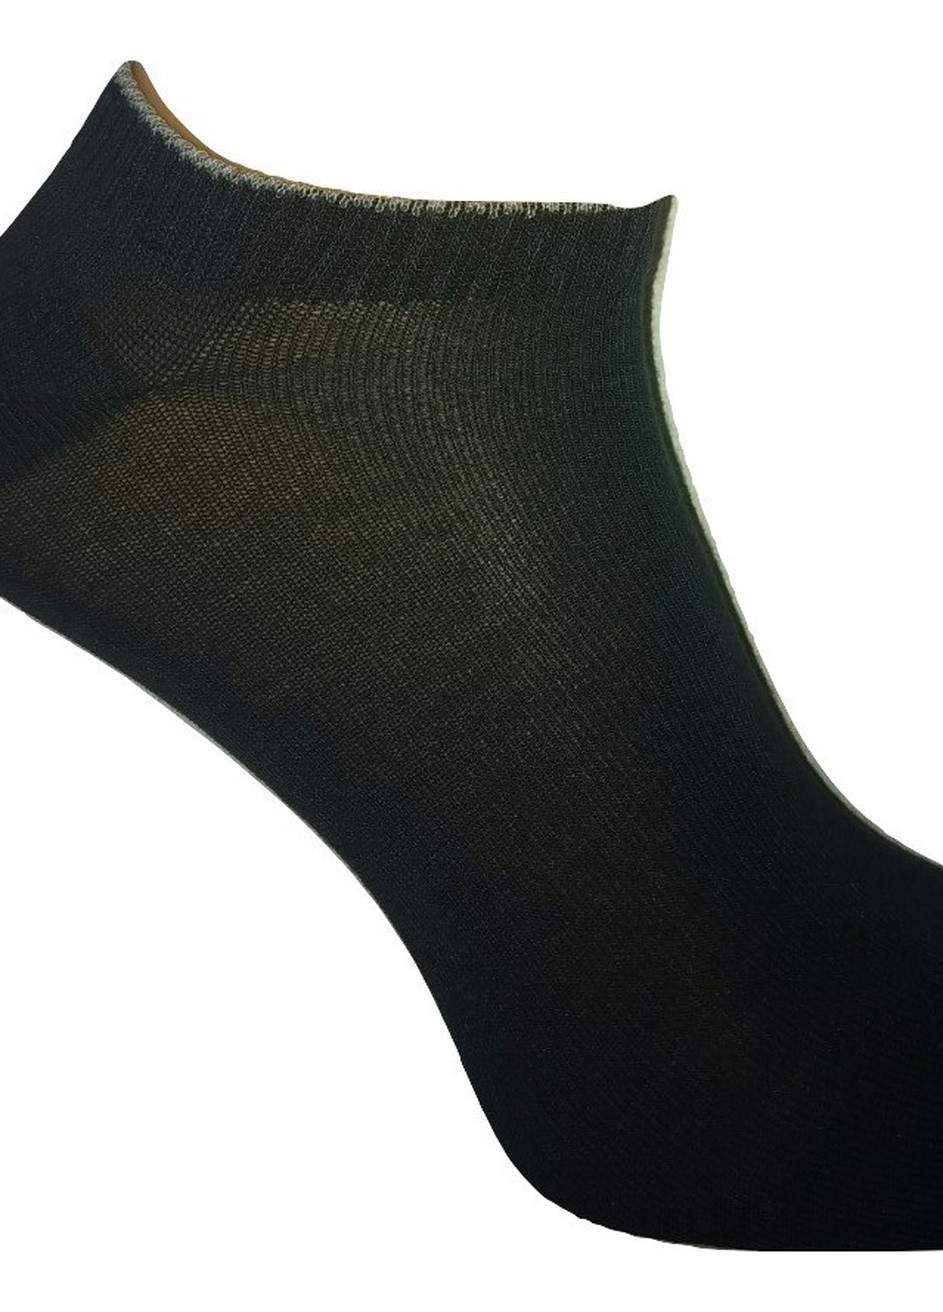 Шкарпетки чоловічі ТМ "Нова пара" бамбук укорочені 438 НОВА ПАРА укорочена висота (257062003)